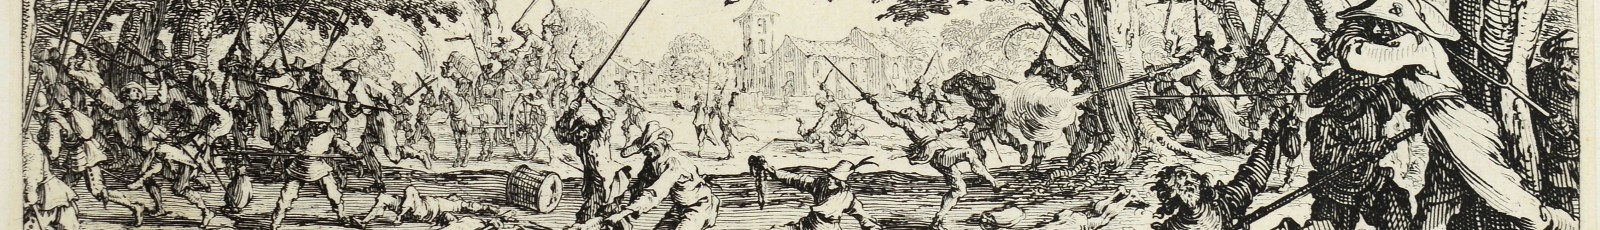 La revanche des paysans. Eau forte gravée par Israël Silvestre d’après Jacques Callot, 1633 (Bibliothèque Mazarine).